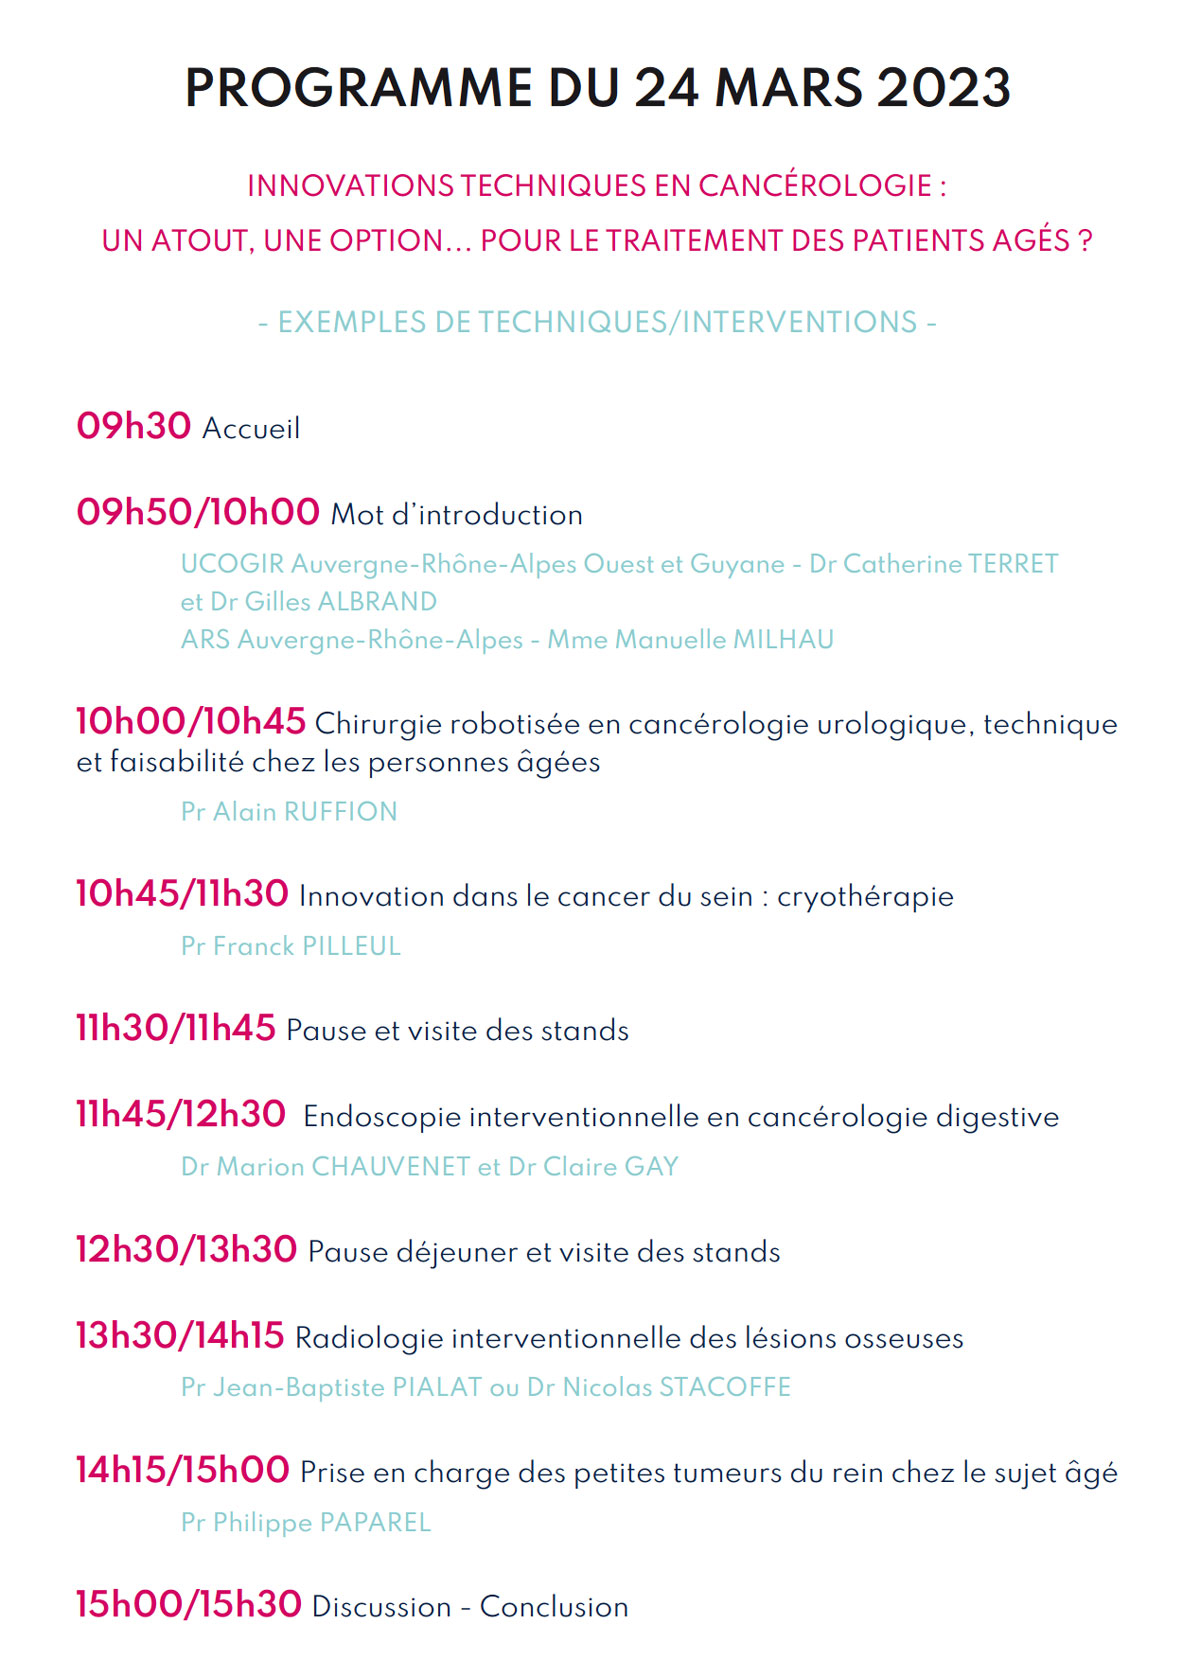 Programme 5ème JOURNÉE RÉGIONALE D’ONCO-GÉRIATRIE 2023